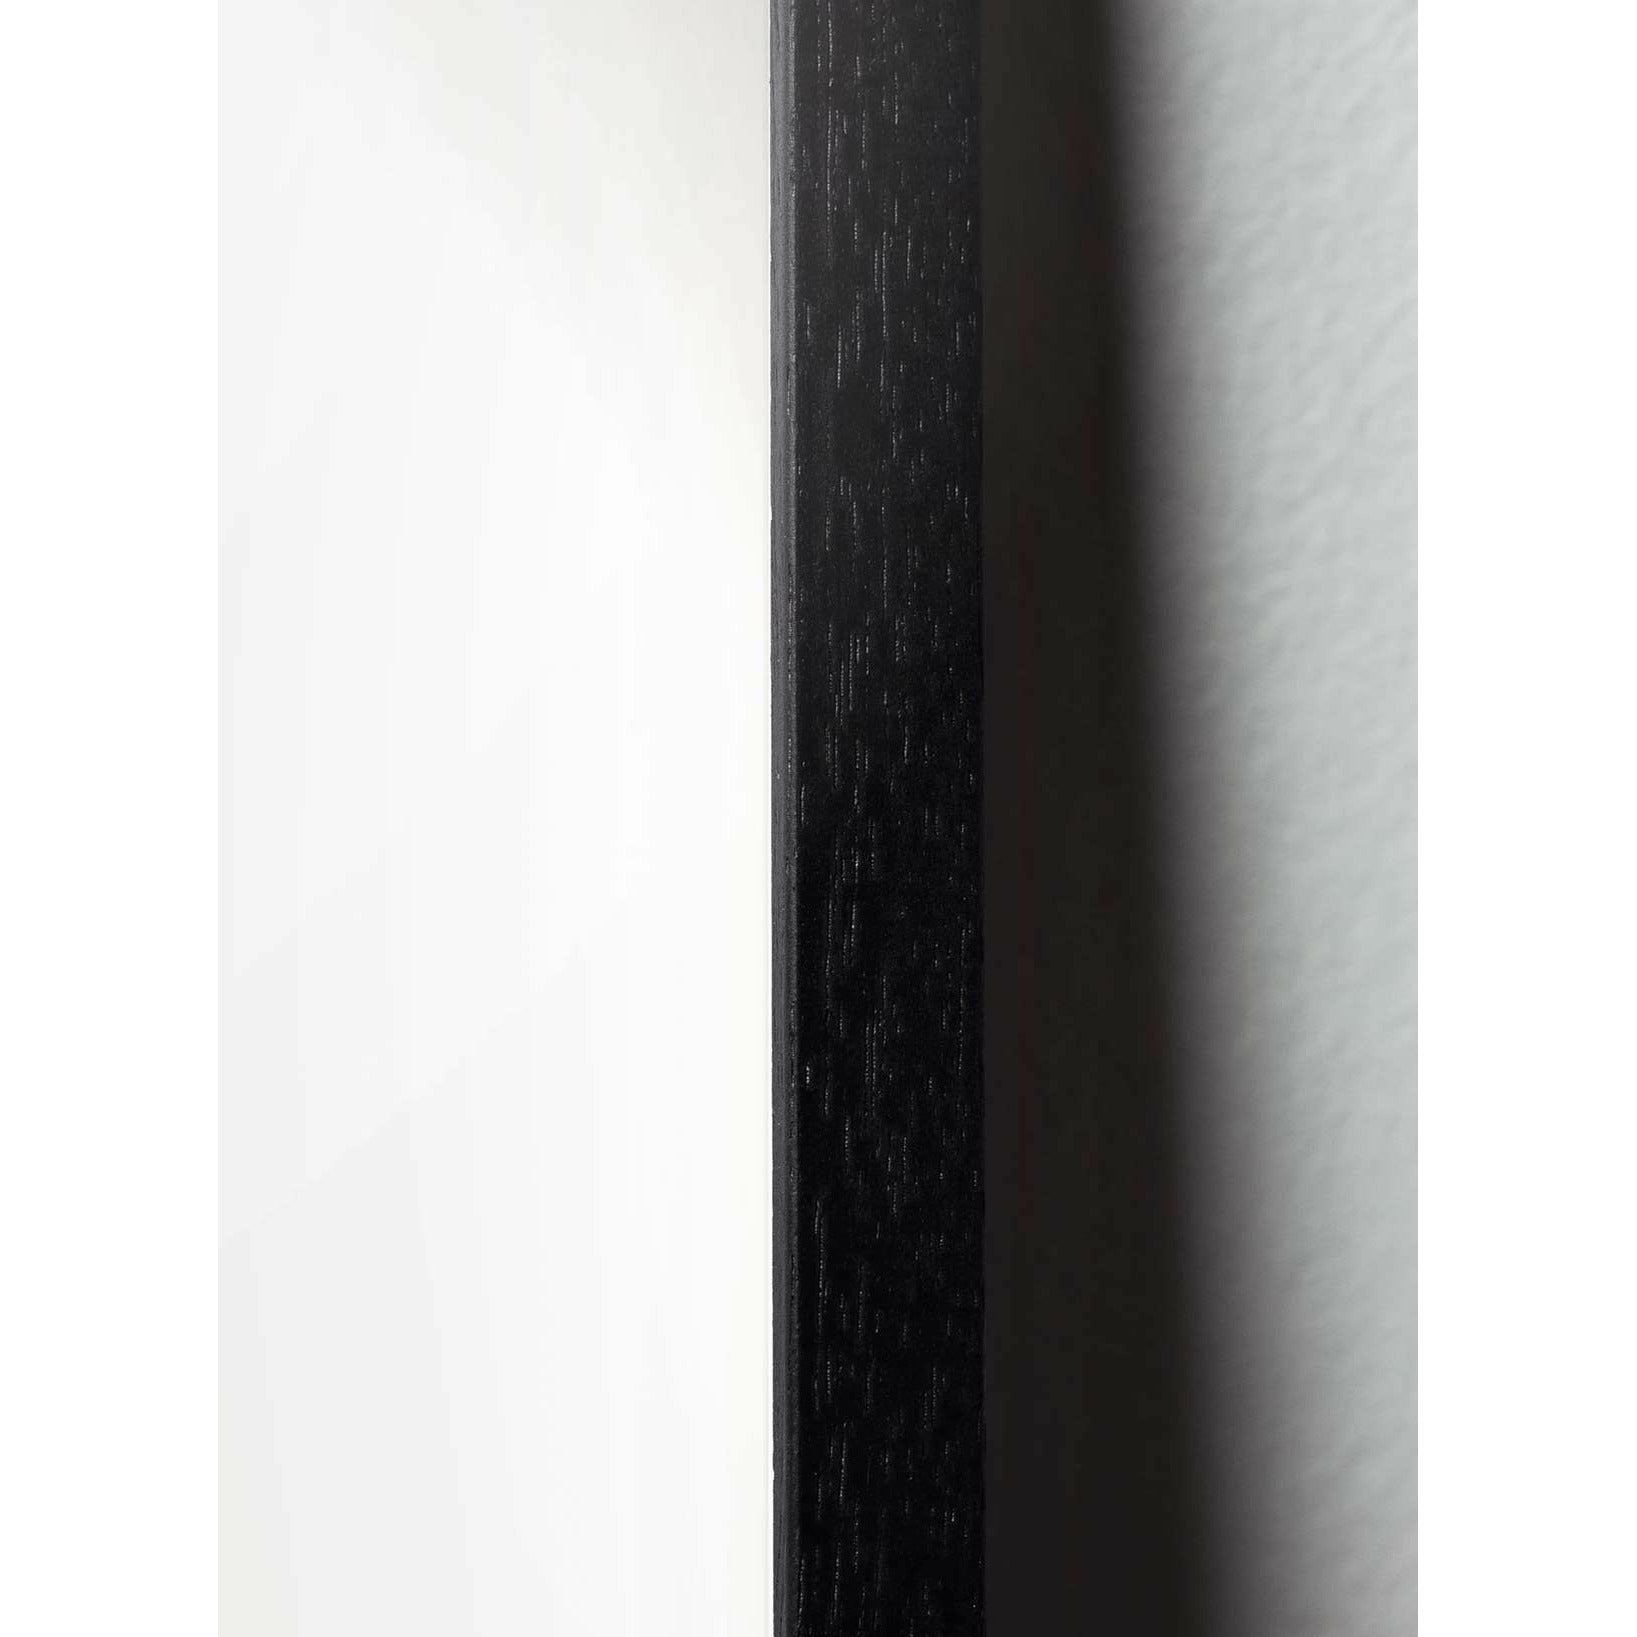 Plakát na kapkové lince mozků, rám v černém lakovaném dřevu 30x40 cm, bílé pozadí